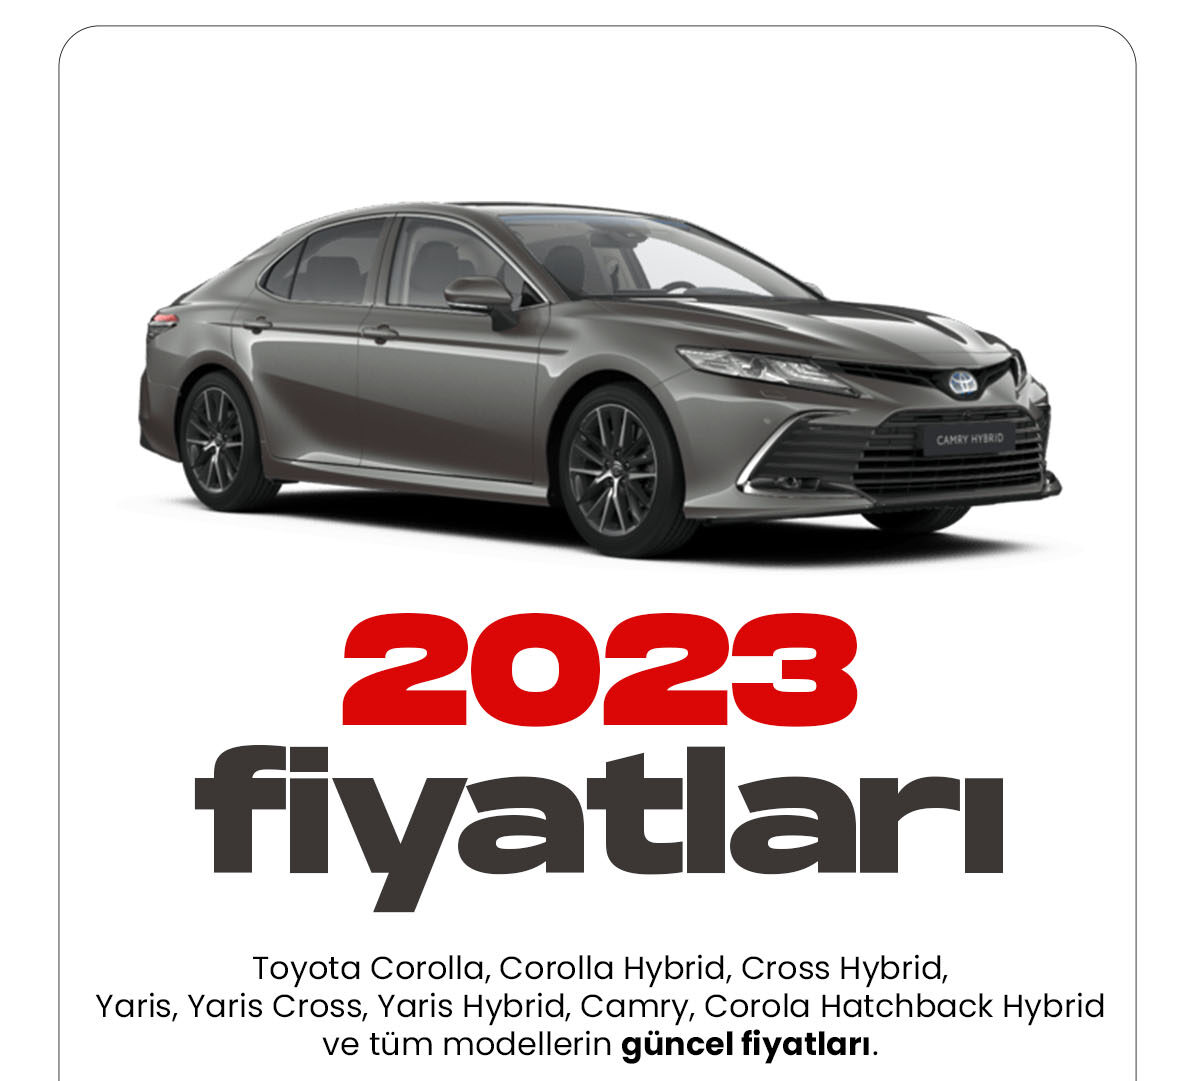 Toyota Ocak fiyat listesi yayımlandı. Her yıl araç modellerine yeni versiyonlar ekleyen Toyota, 2023 yılı fiyat listelerini güncelledi. Türkiye'de Toyota tutkunu olan birçok araç sürücüsü var. Modern ve dinamik tasarımıyla sürücüleri kendine hayran bırakıyor.